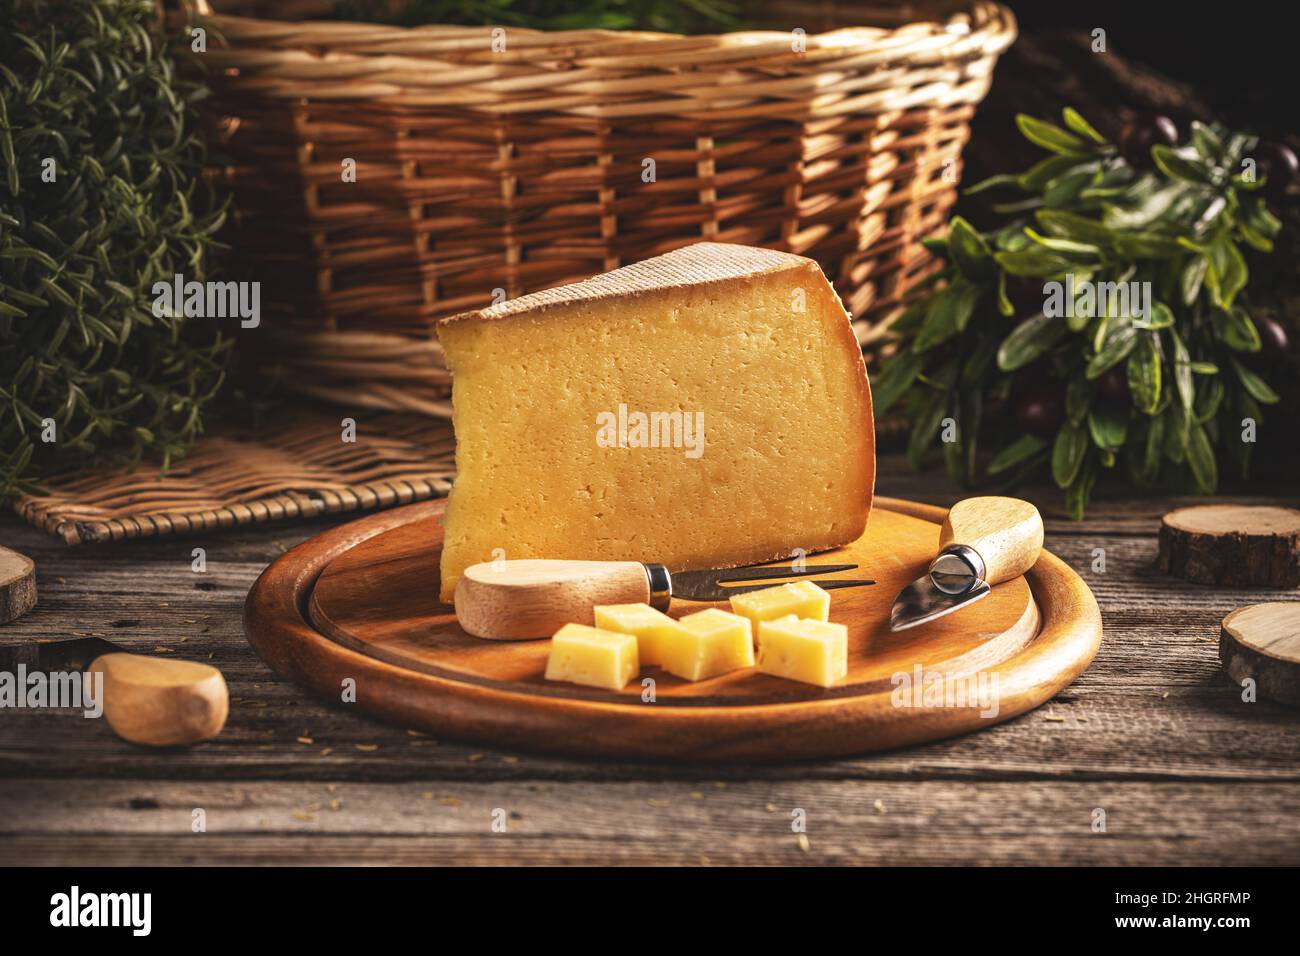 Affettare e cubetti di formaggio giallo a maturazione lunga su tagliere di legno Foto Stock